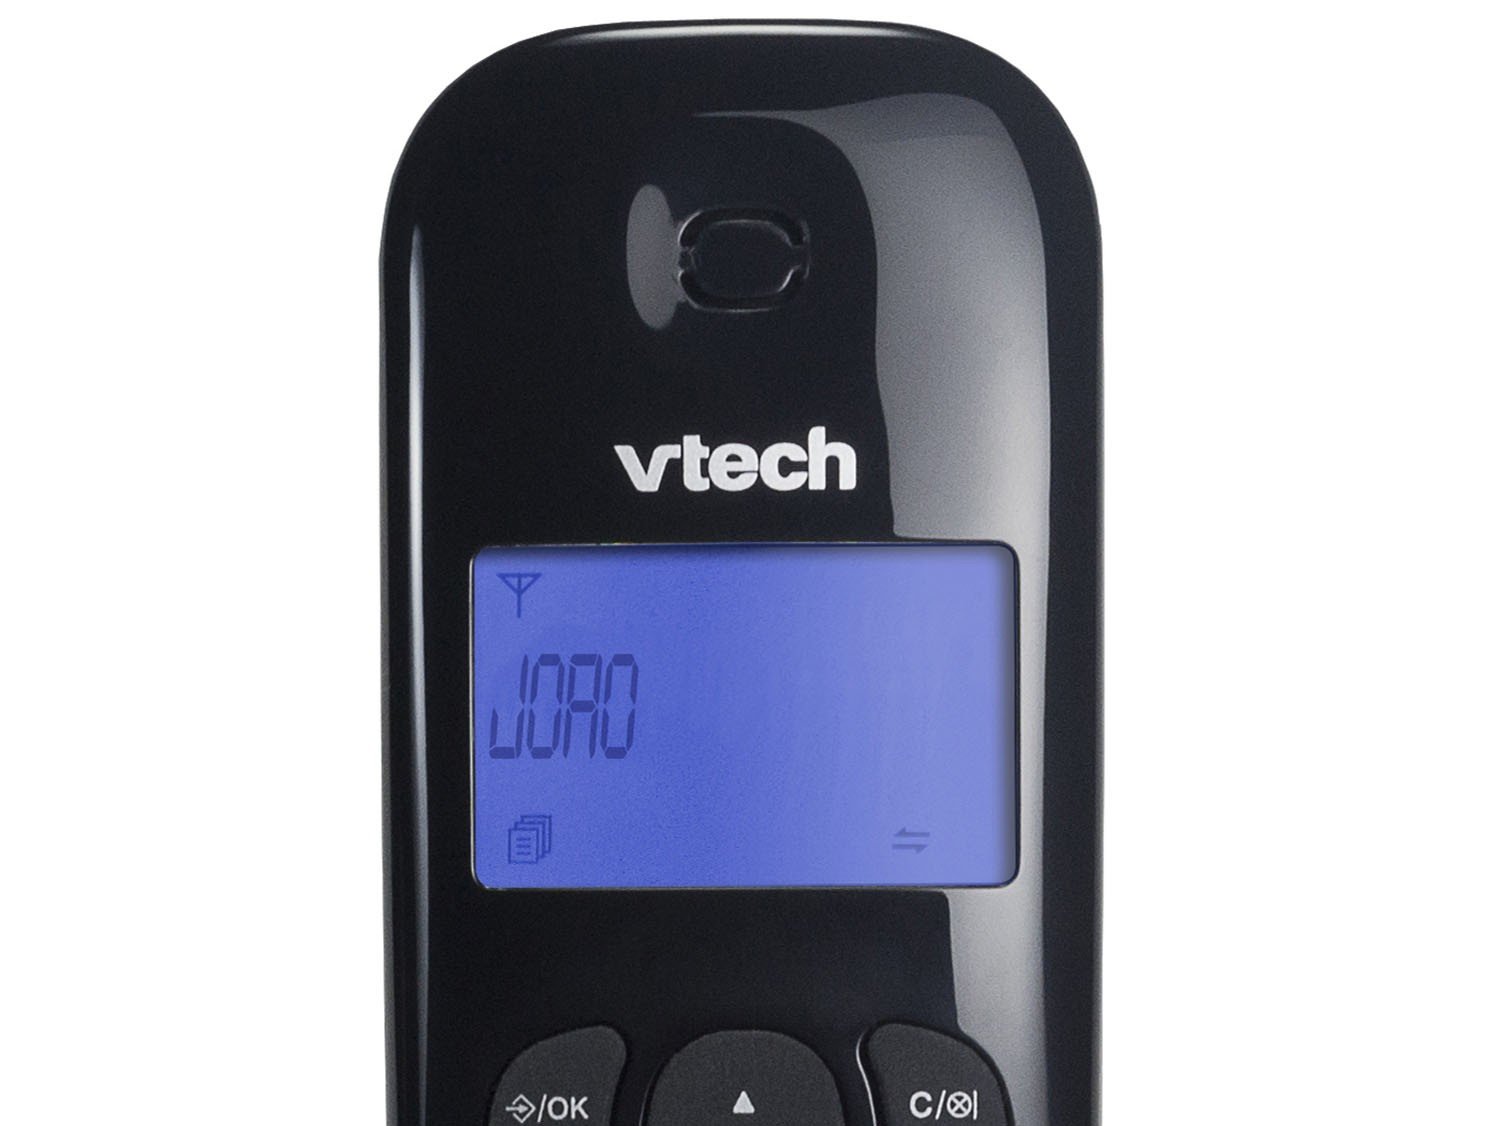 Telefone Digital Sem Fio Vtech VT680 com Identificador de Chamadas e Visor - Preto - 2